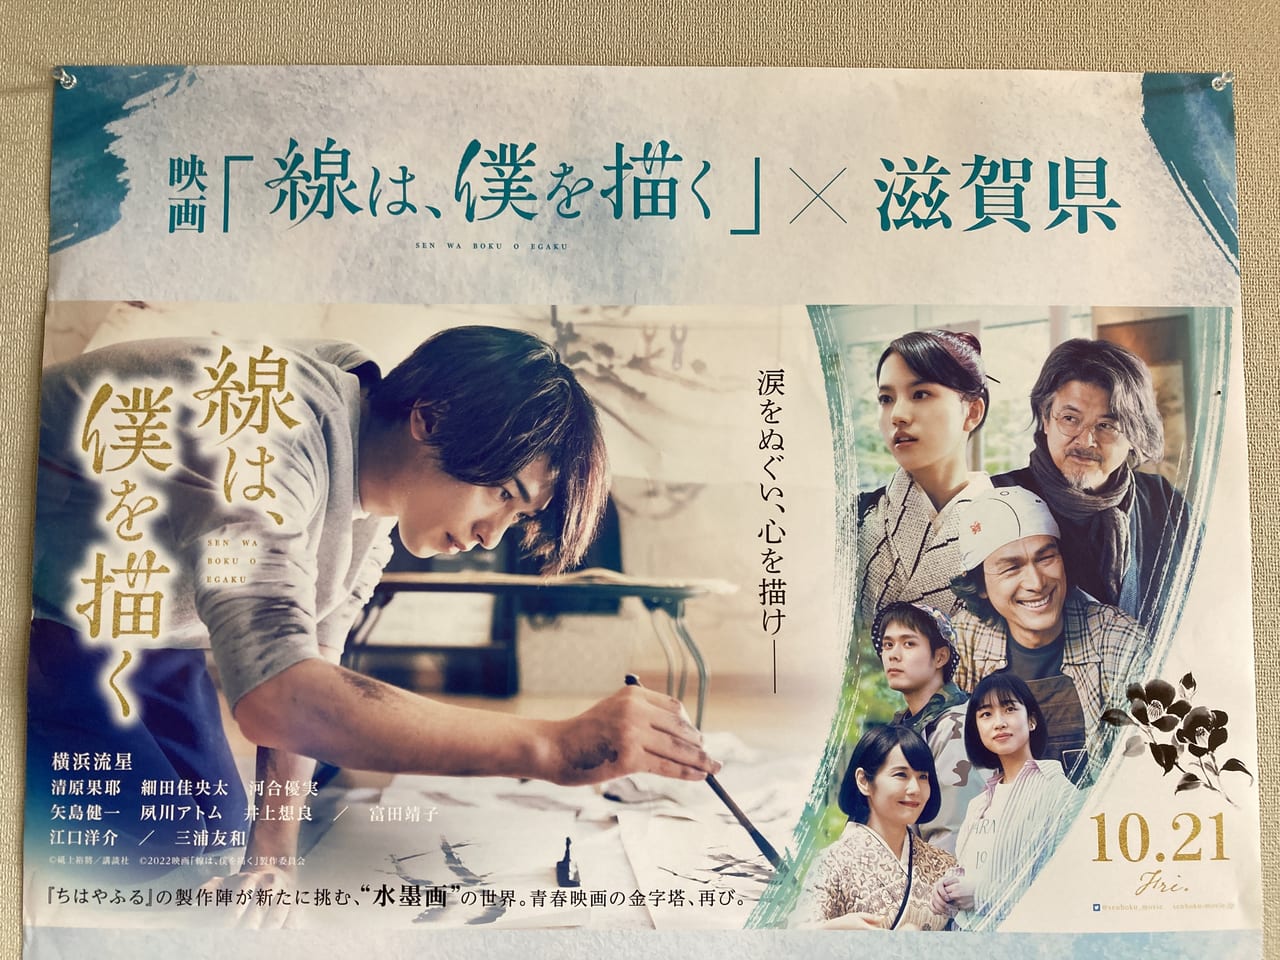 映画『線は、僕を描く』×滋賀県デジタルスタンプラリーキャンペーン